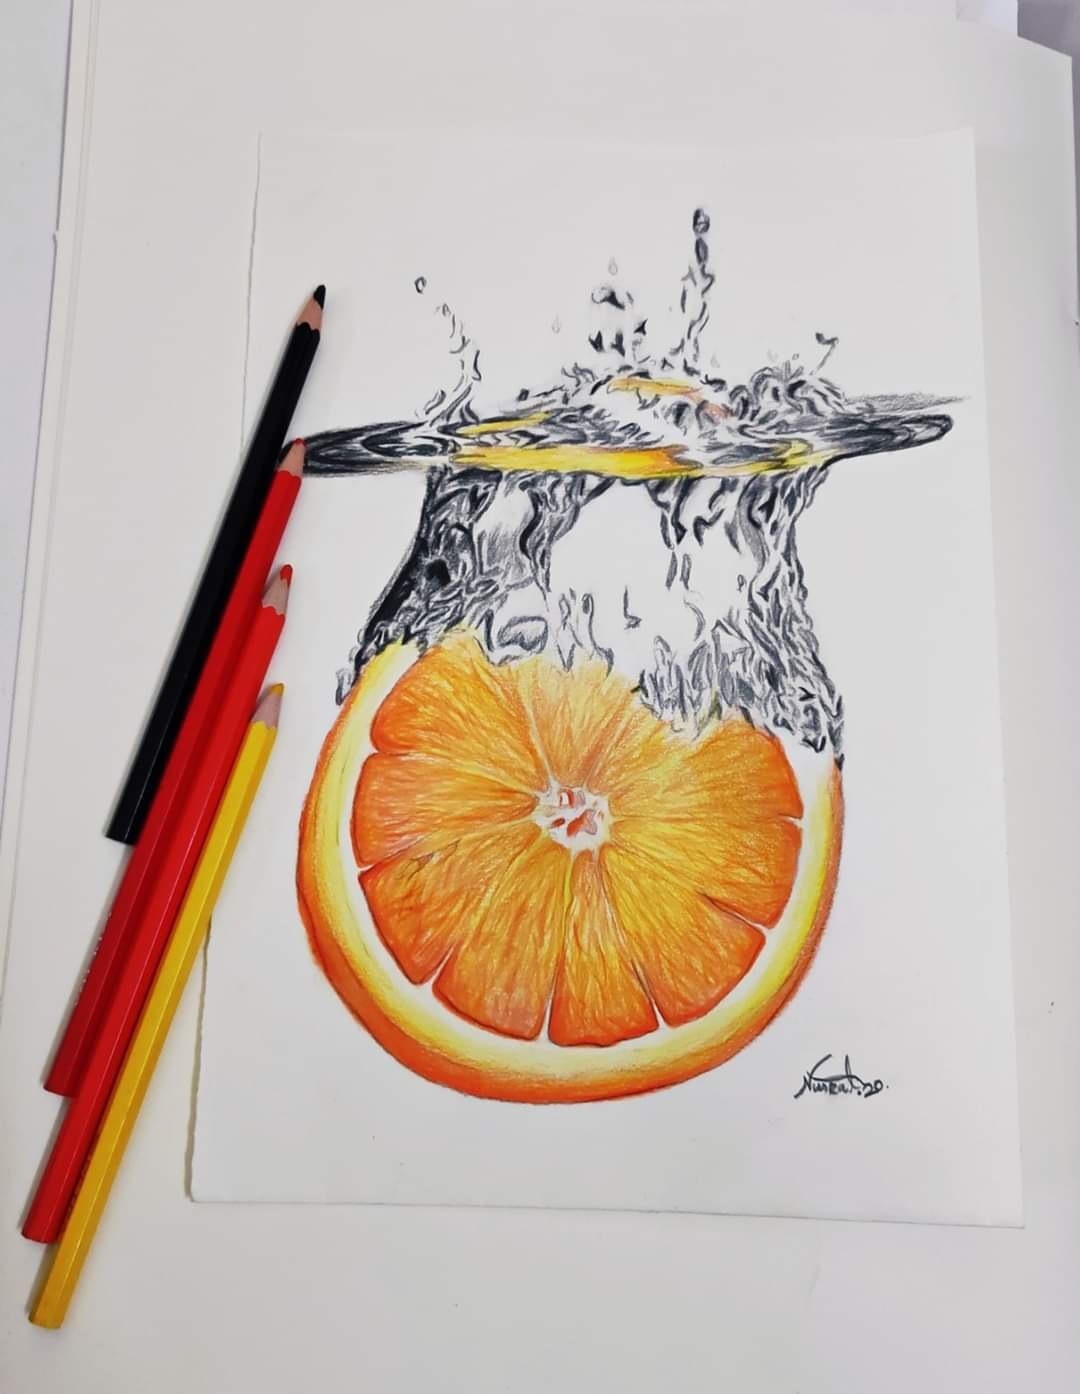 how to draw an orange slice